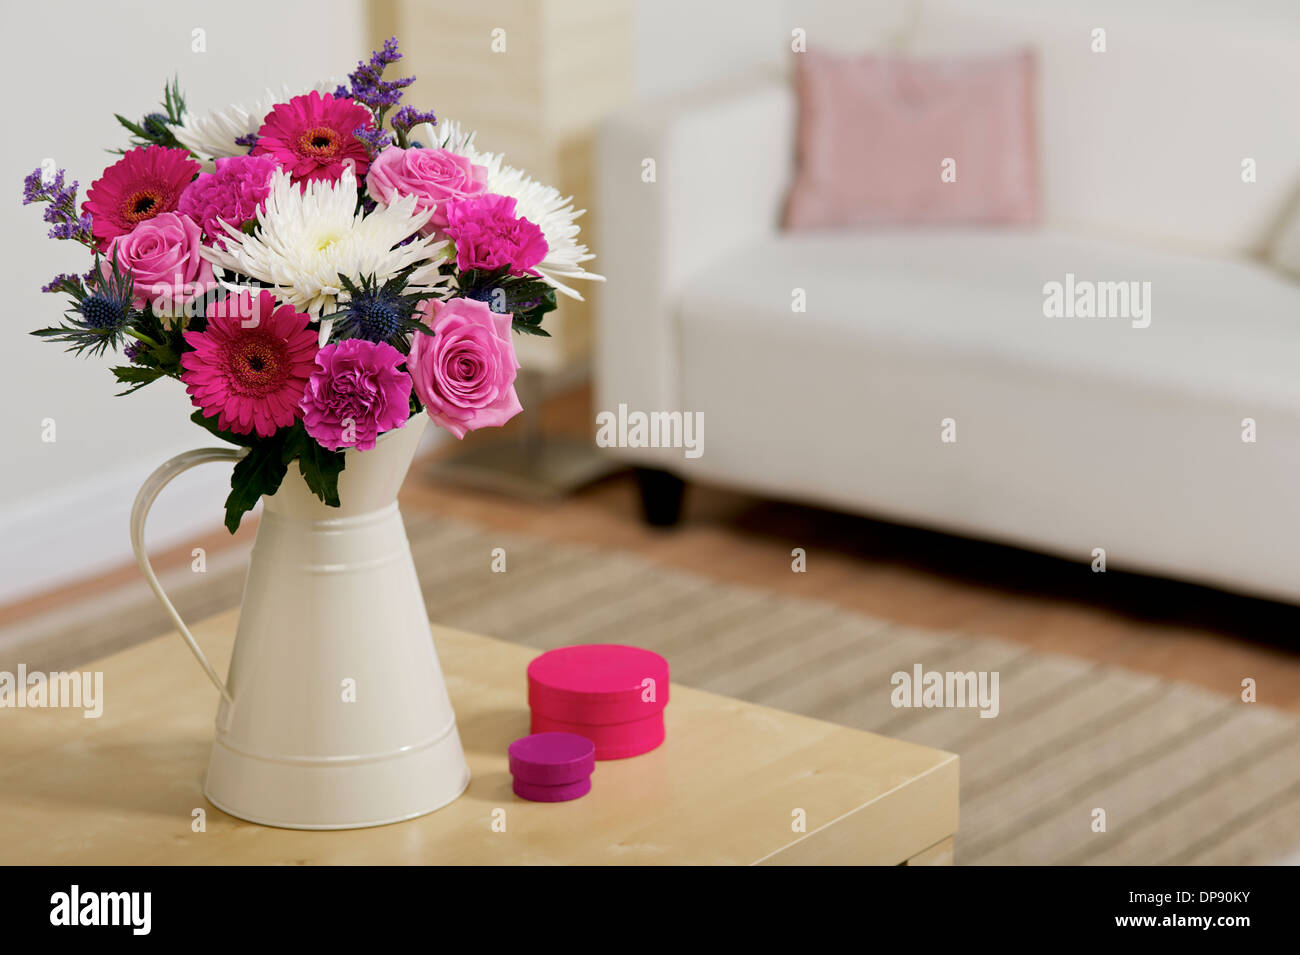 Bouquet di fiori rosa e bianchi in una crema vaso o brocca in una camera settings Foto Stock